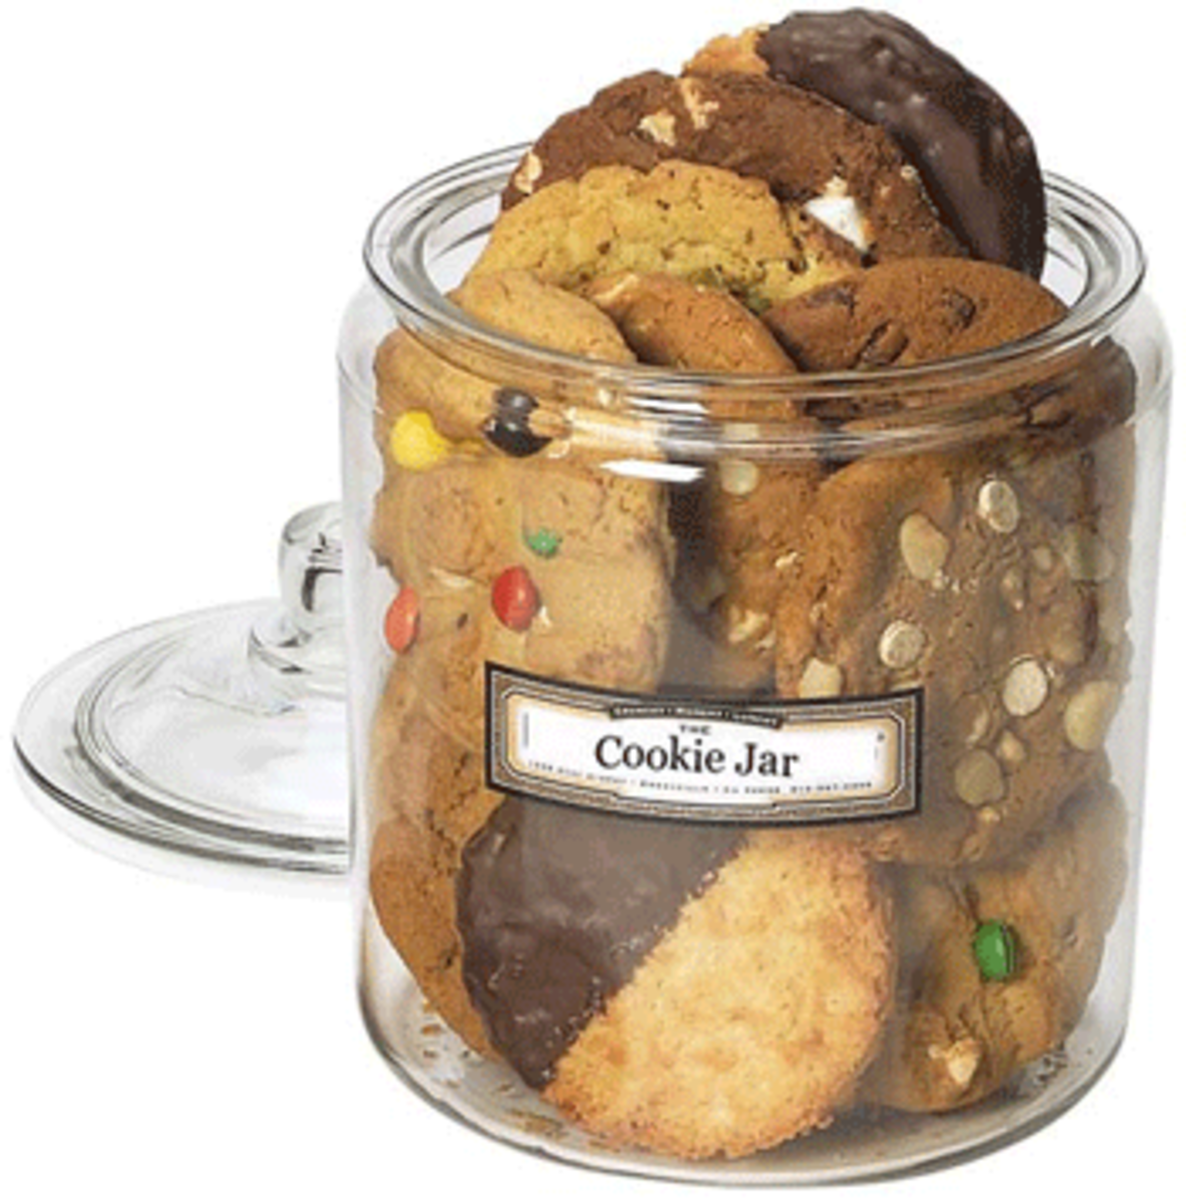 cookie-jar